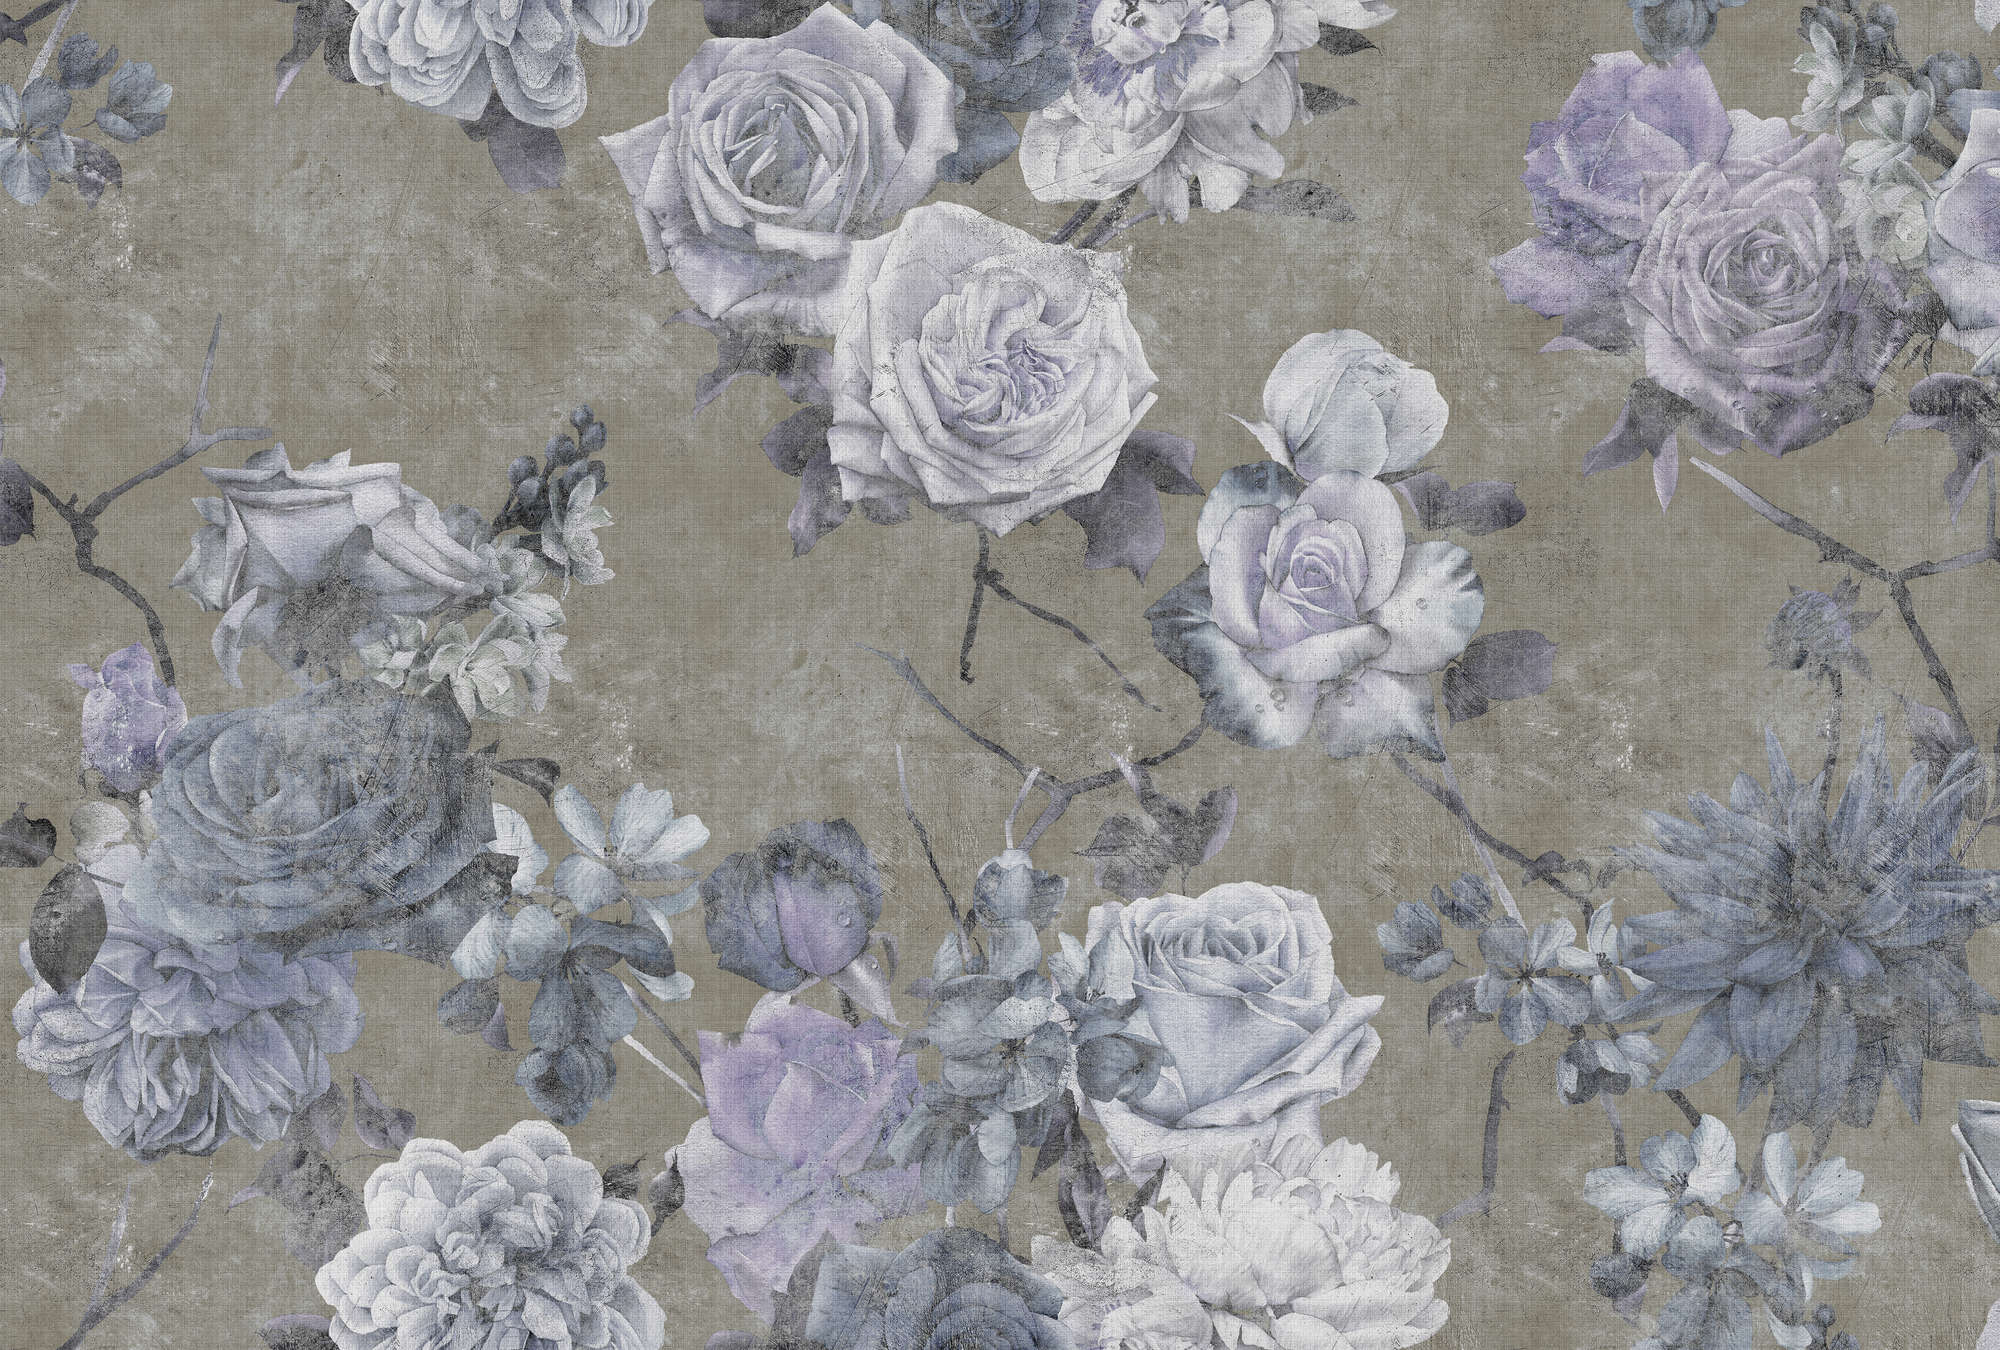             Sleeping Beauty 1 - Carta da parati in lino naturale con struttura a fiori di rosa in look used - Blu, Taupe | Vello liscio opaco
        